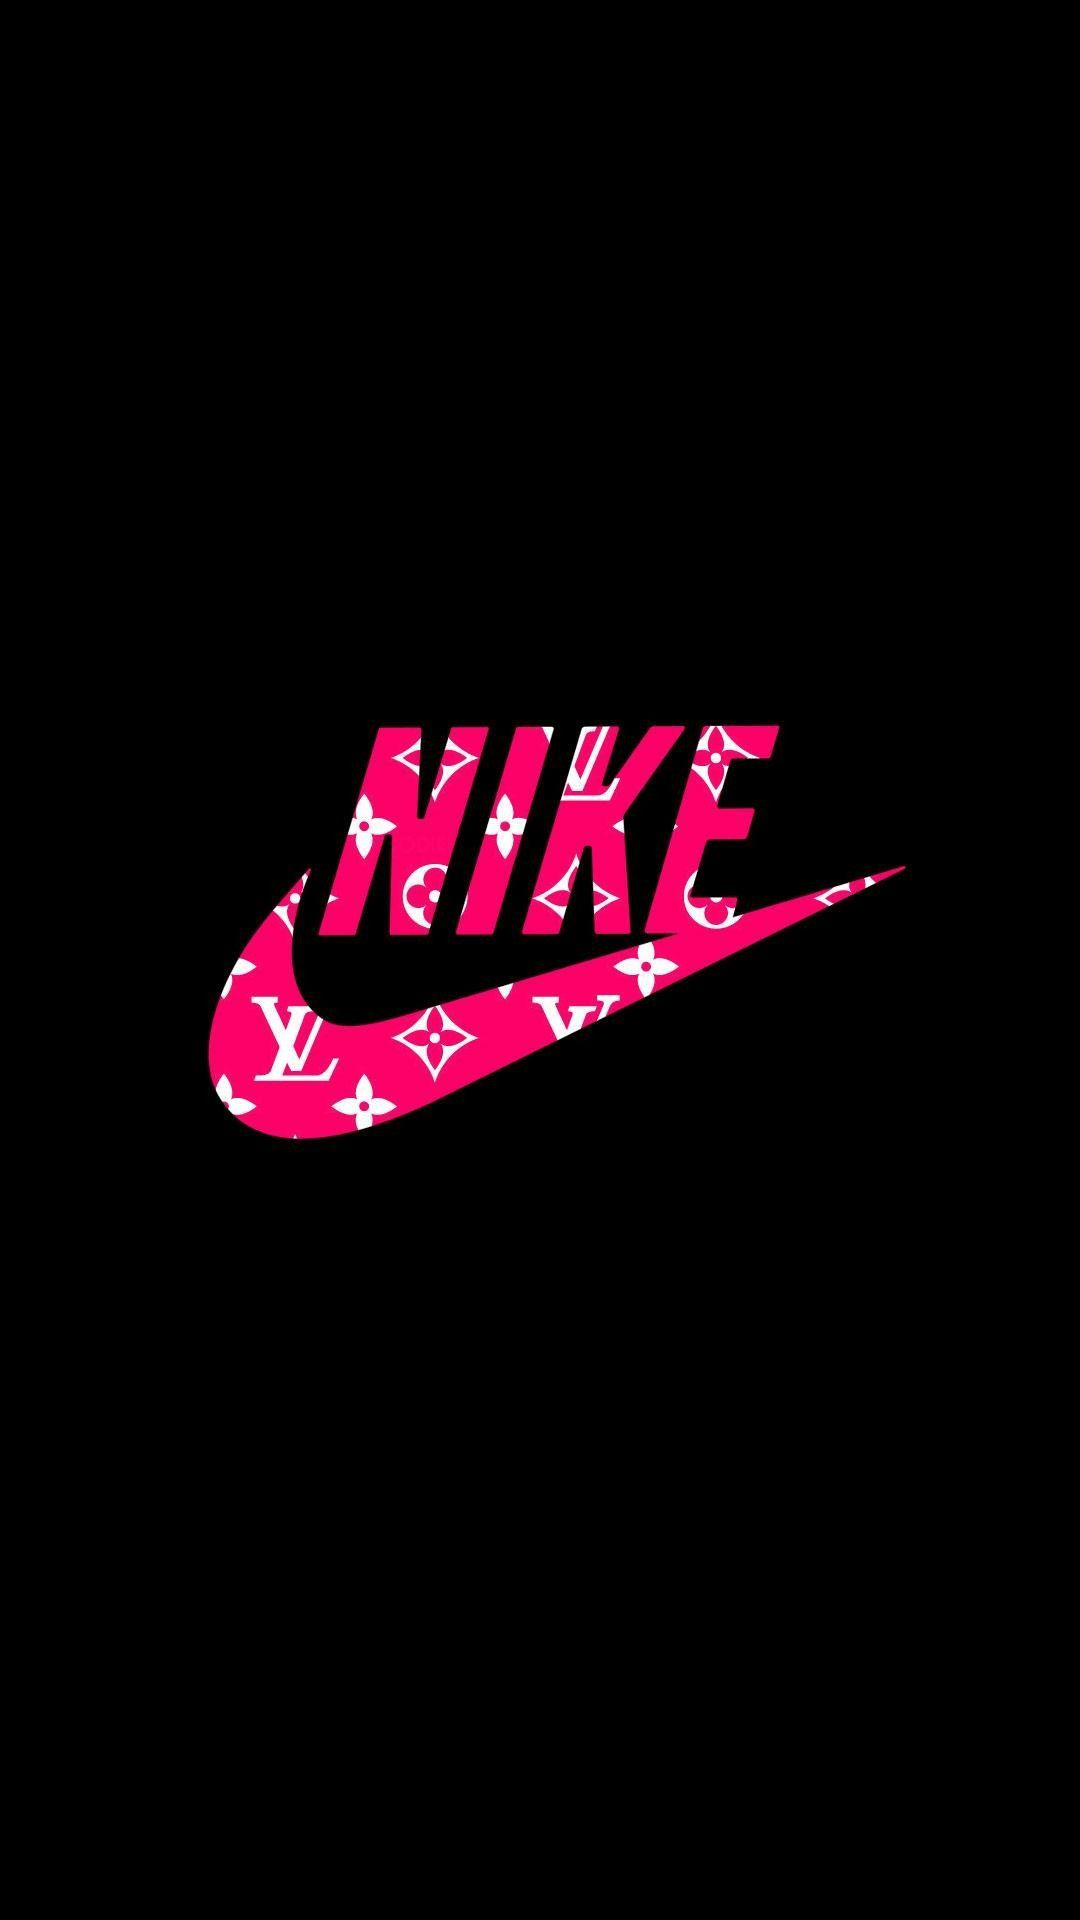 Để trắng trộn làm gì khi bạn có thể chọn cho mình một hình nền Nike màu hồng xinh xắn? Đặc biệt là, với thiết kế đẹp mắt và ấn tượng, hình nền Nike hồng chính là điểm nhấn hoàn toàn mới cho chiếc điện thoại của bạn.